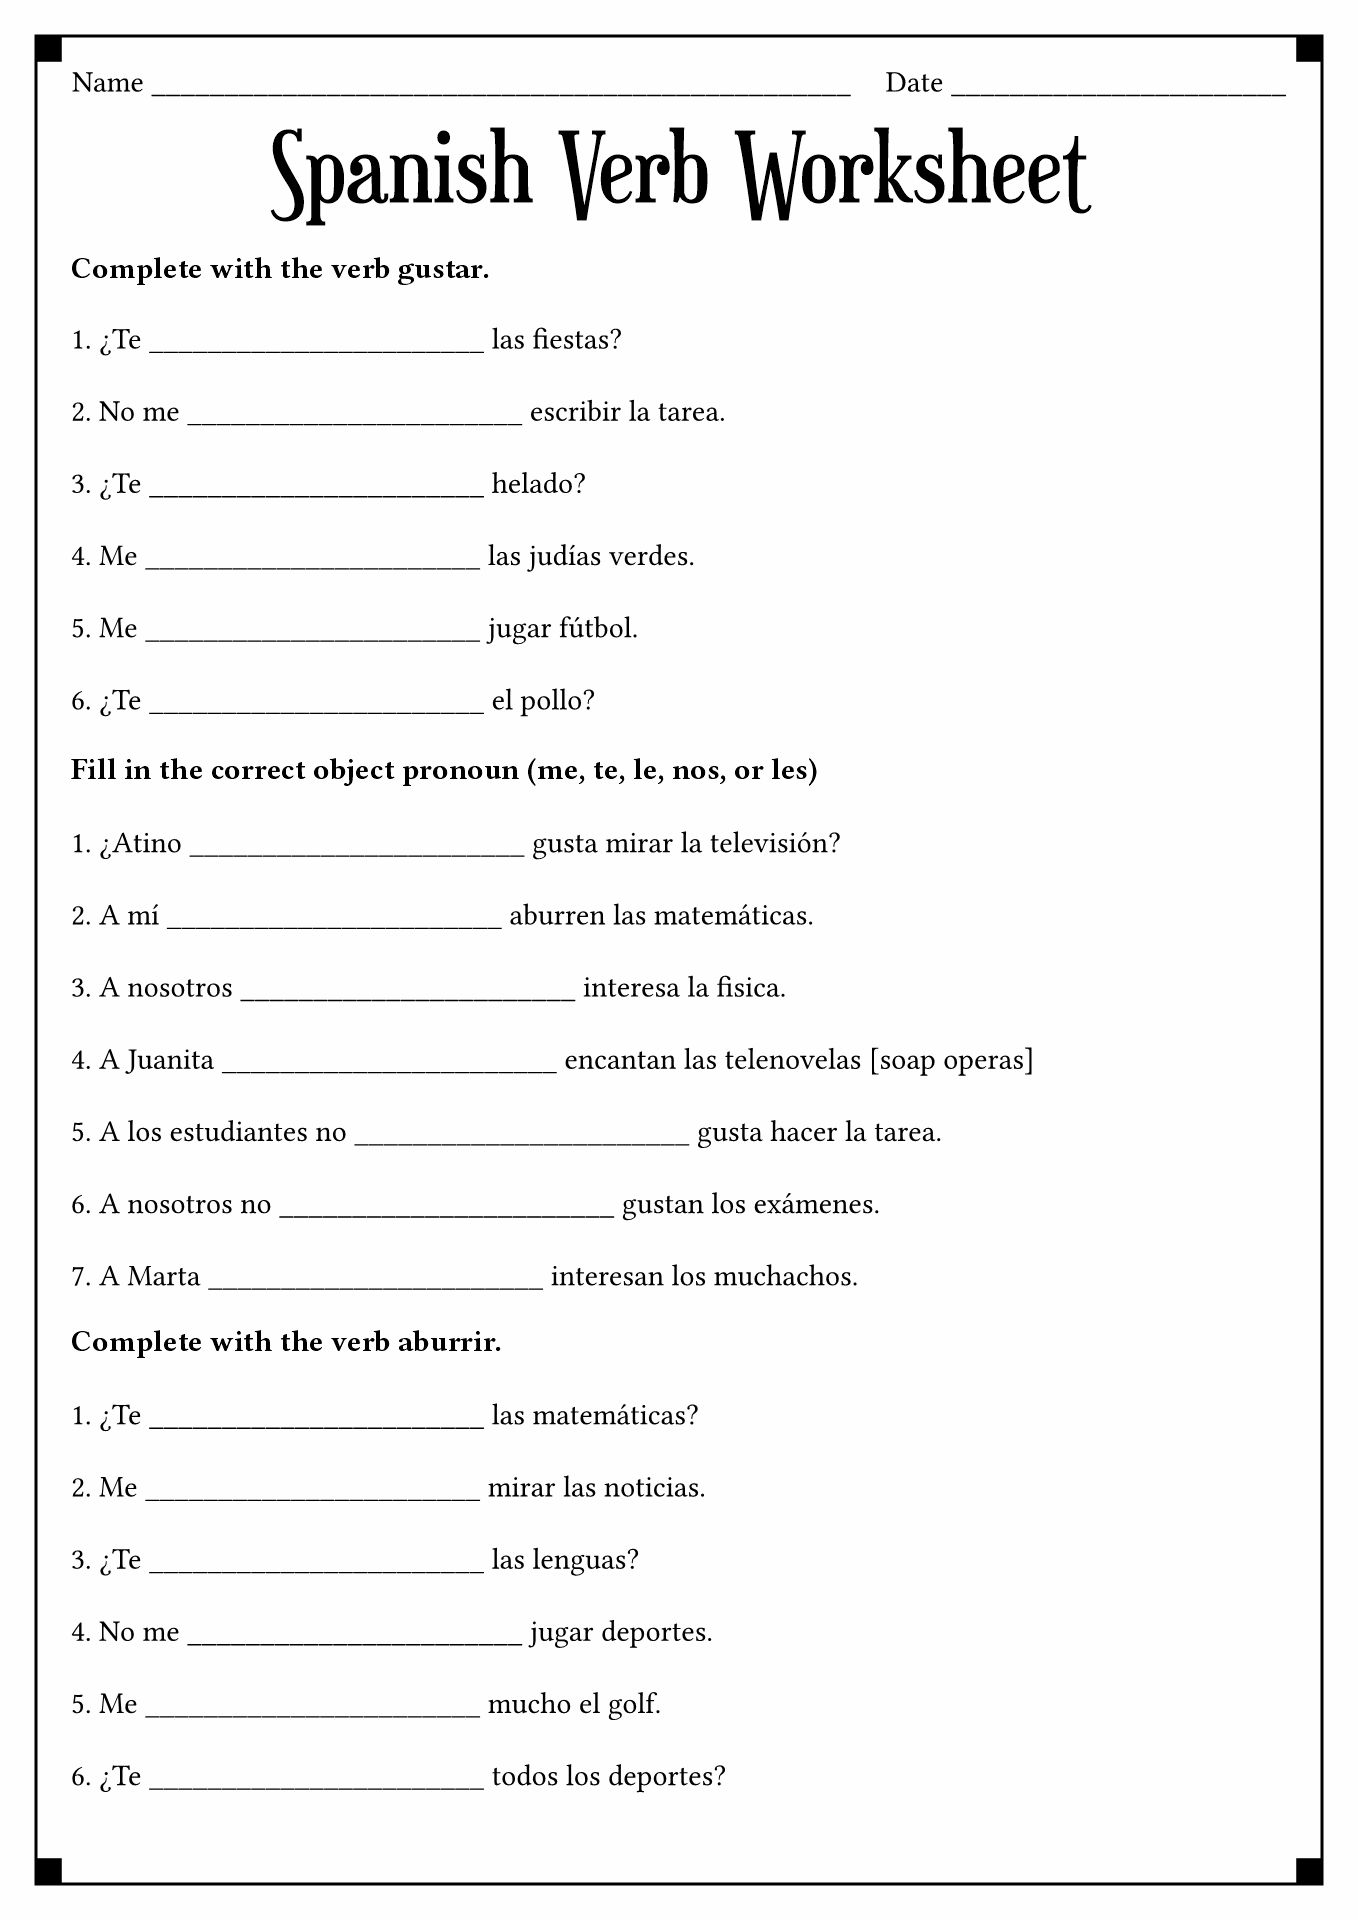 Spanish Verb Gustar Worksheets